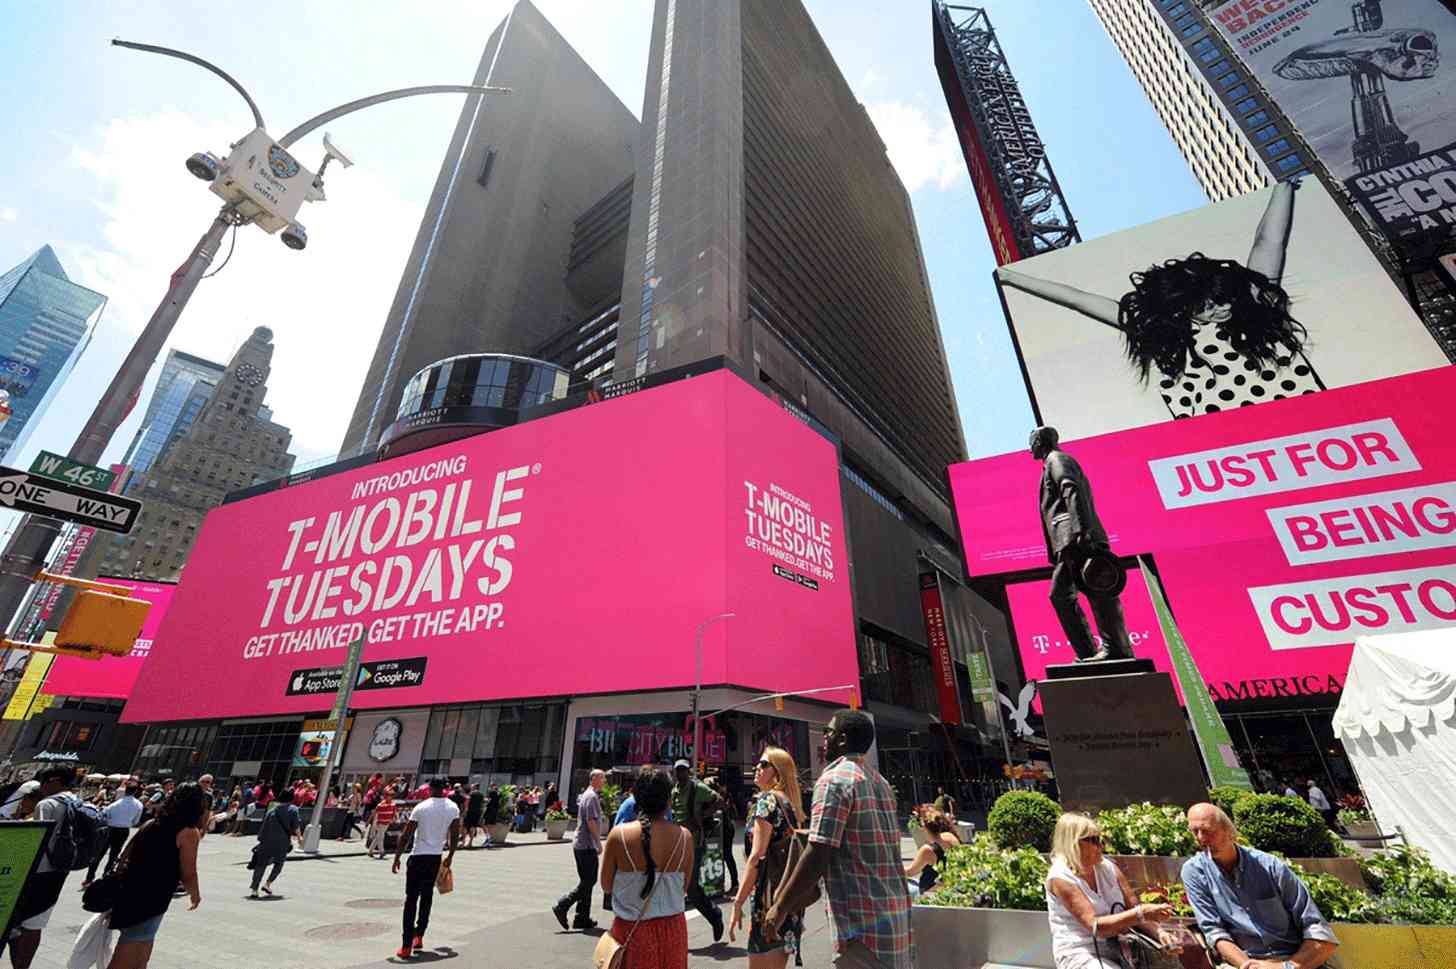 T-Mobile Tuesdays Un-carrier 11 event